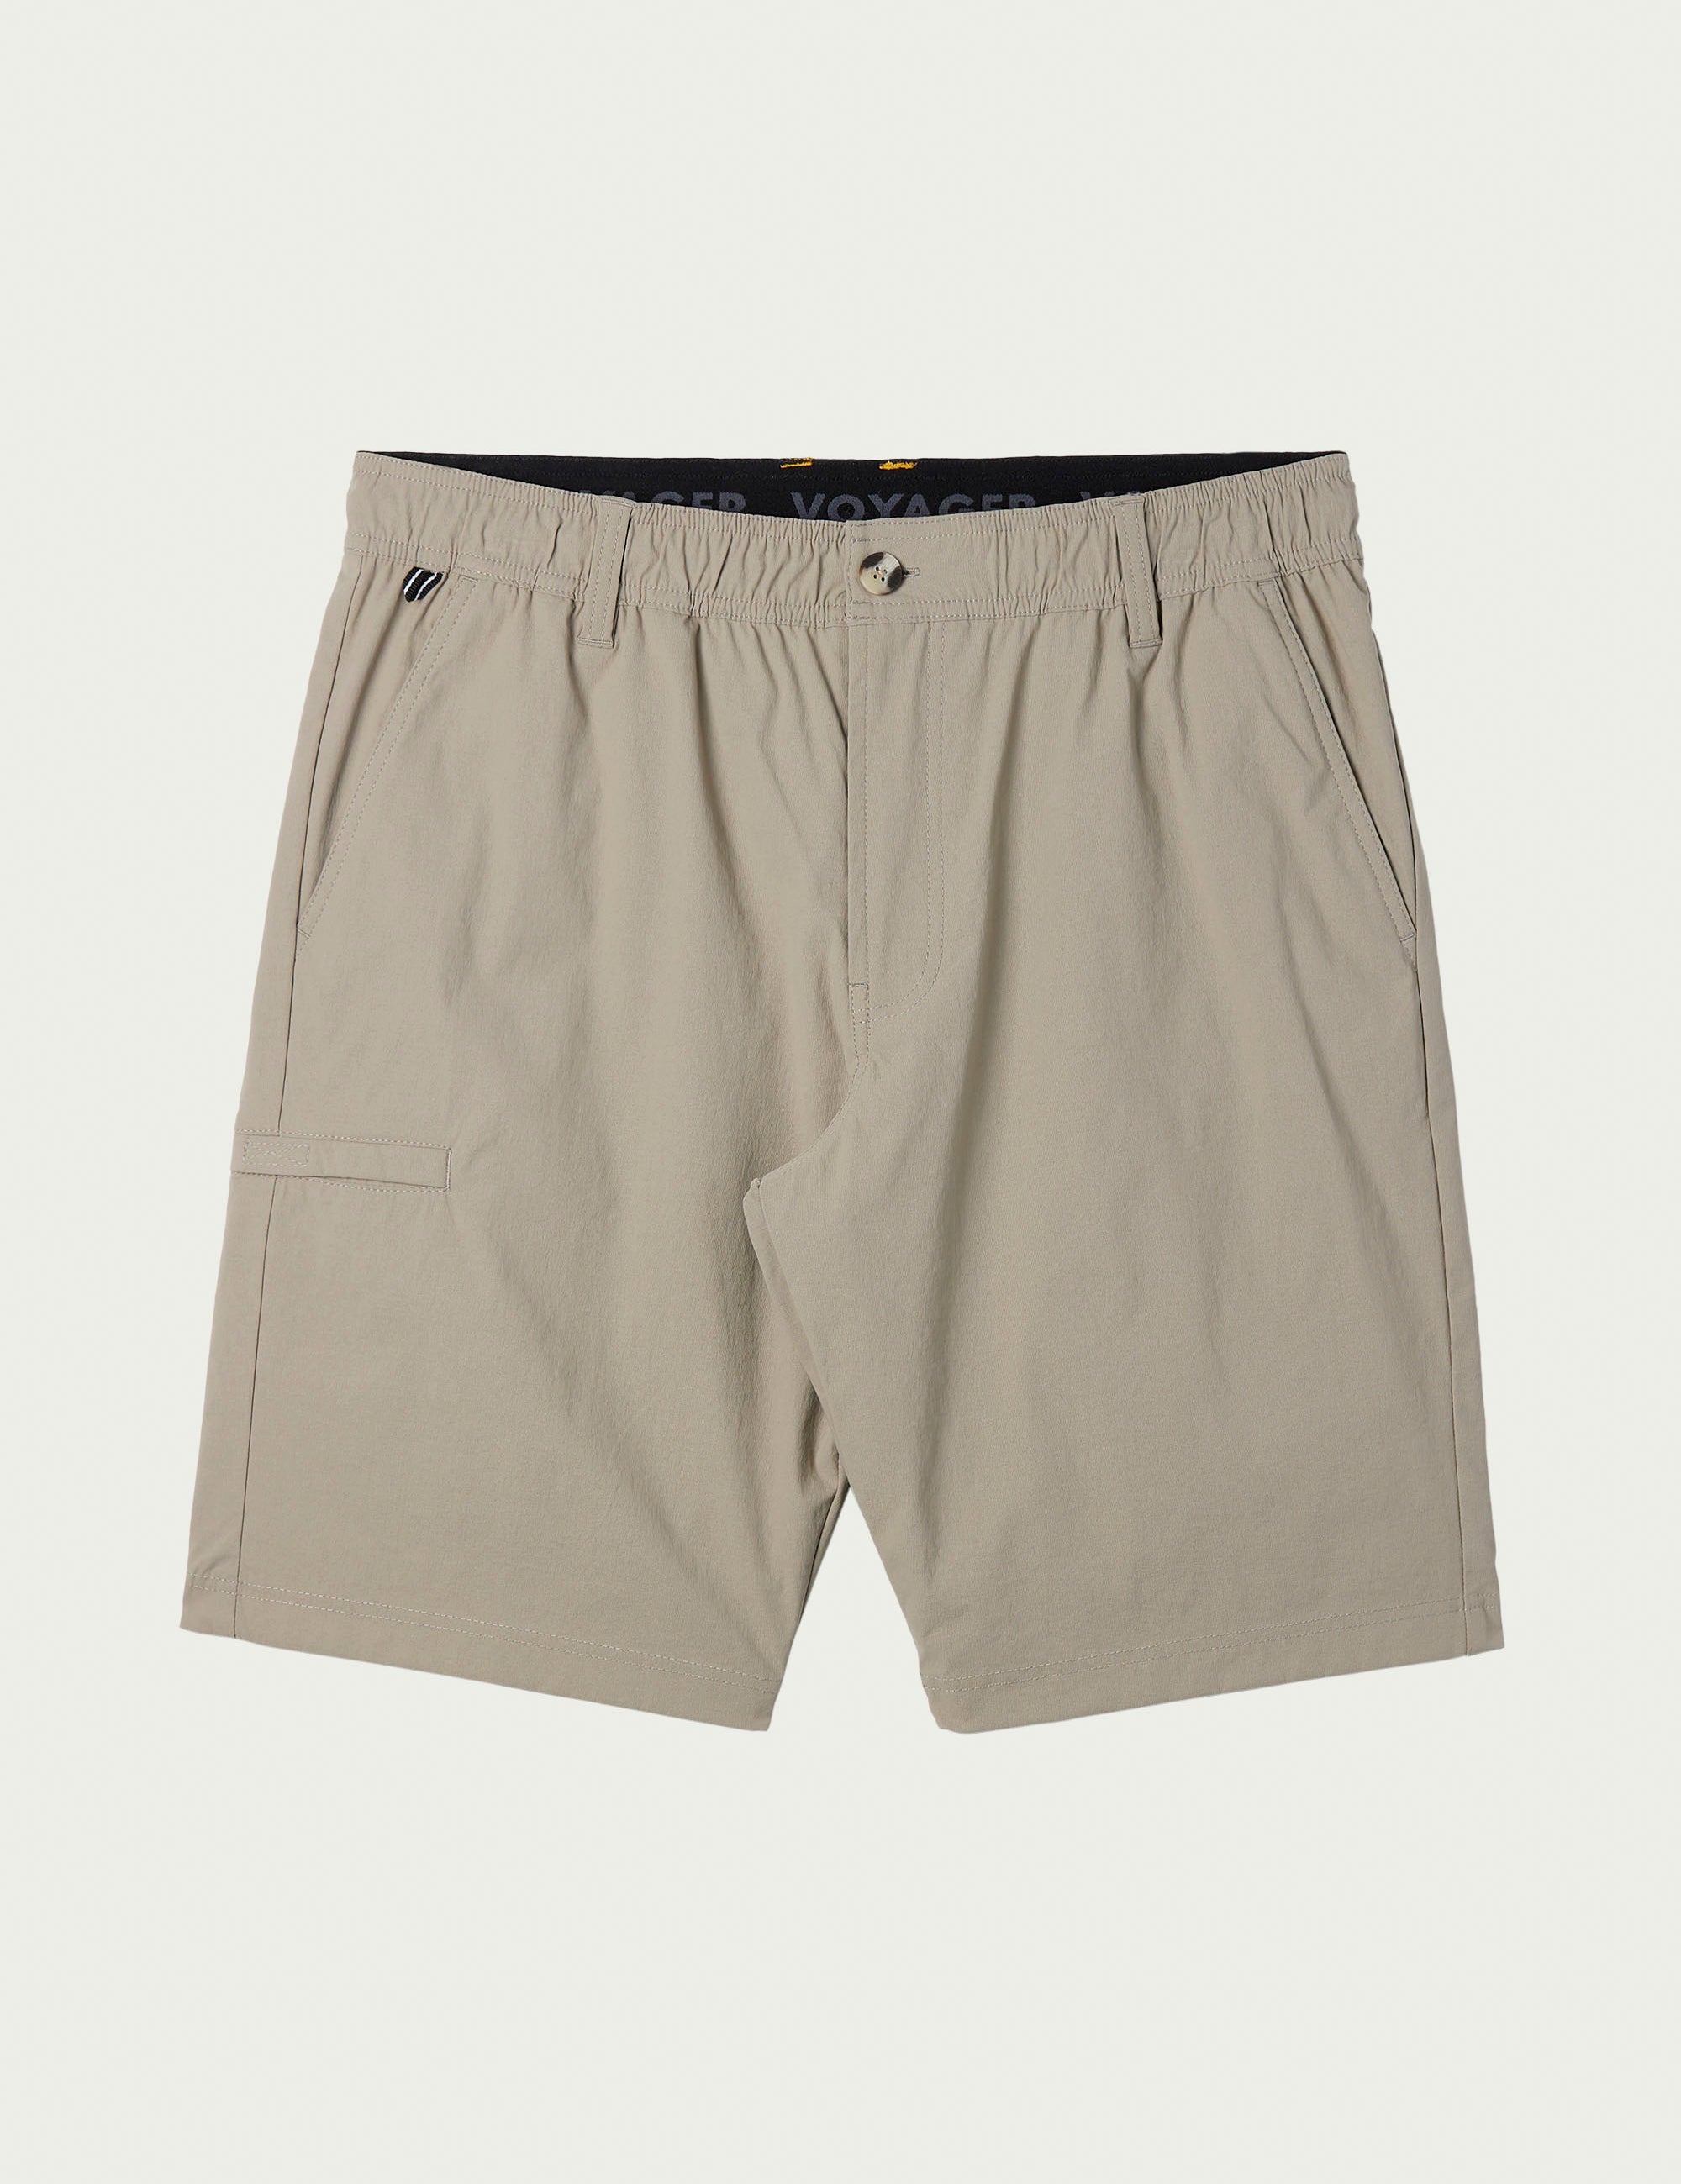 Men's Bottoms - Shorts & Pants